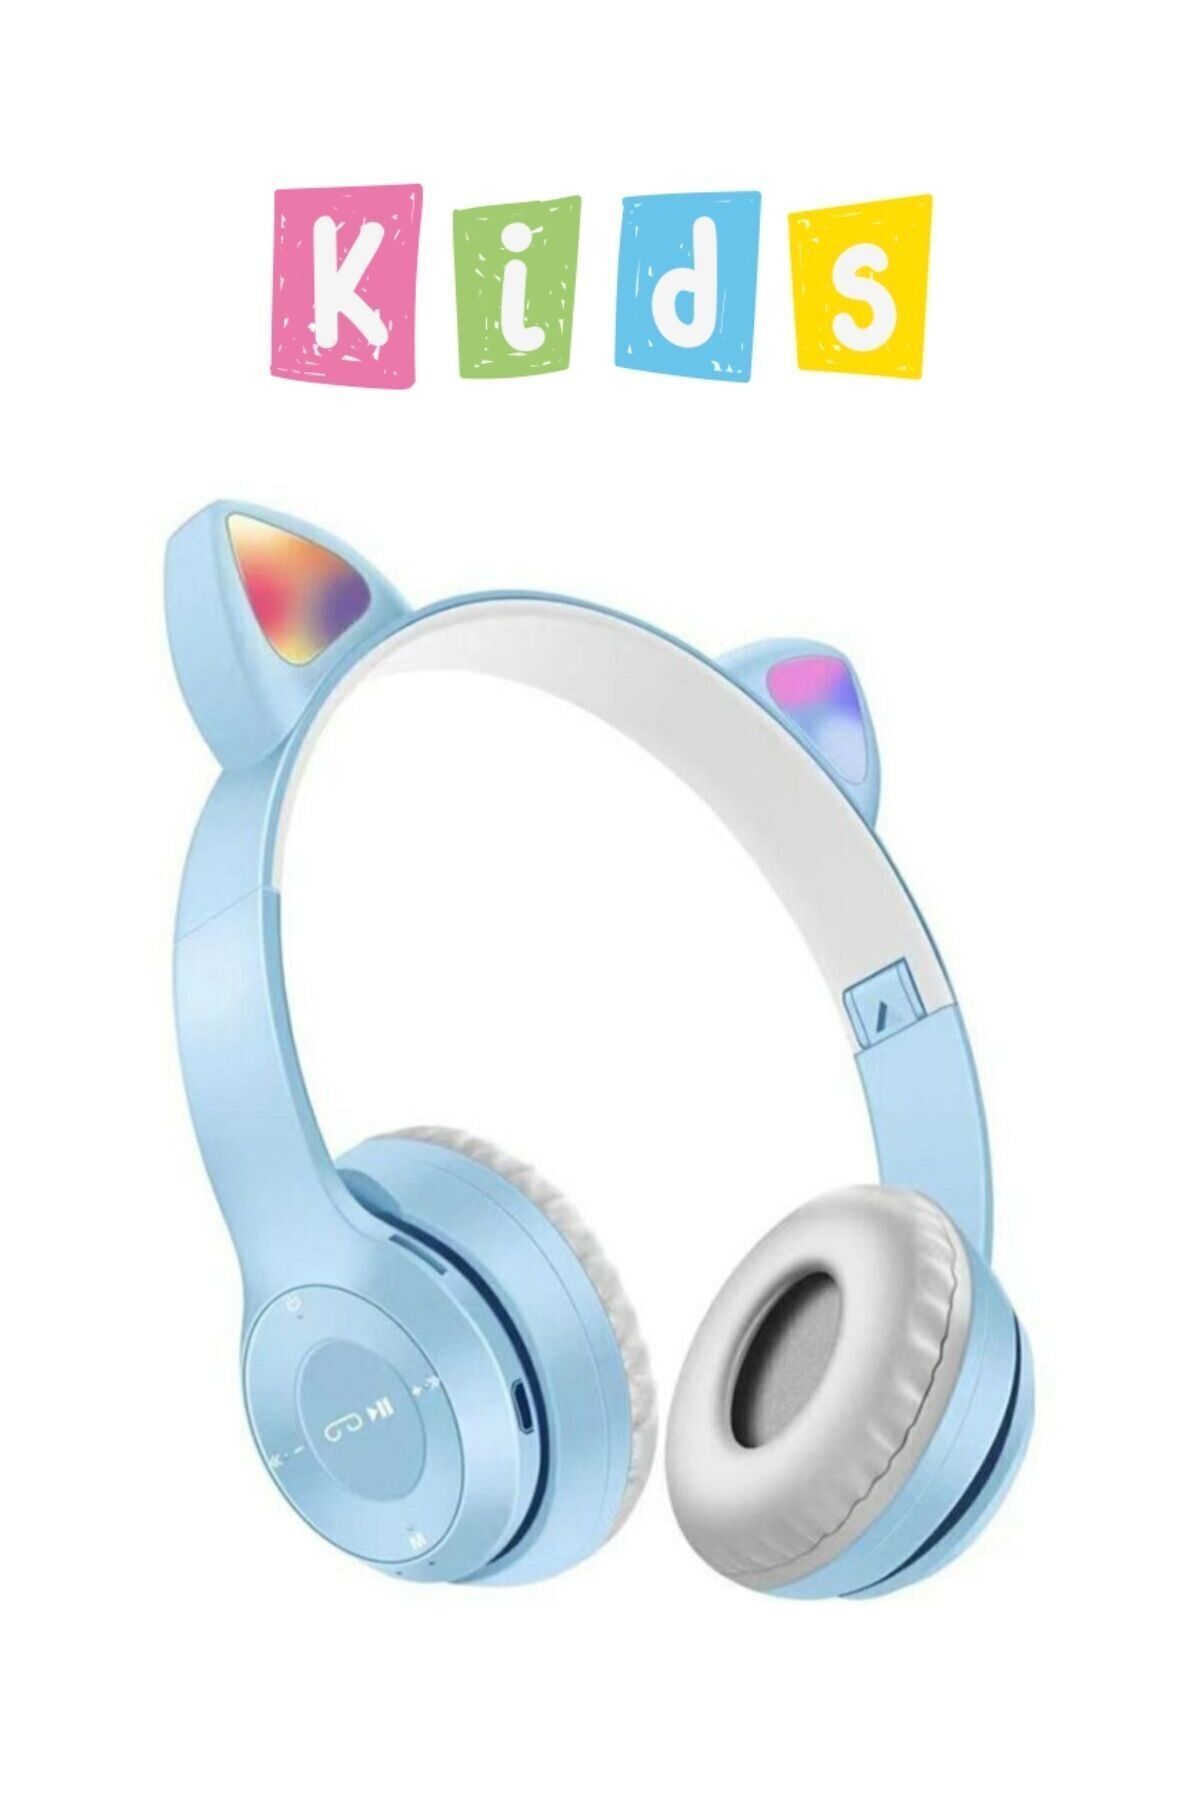 Noriyen Erkek Çocuklar Için Kedi Kulaklı Işıklı Mikrofonlu Kablosuz Bluetooth Kedili Çocuk Kulaklık